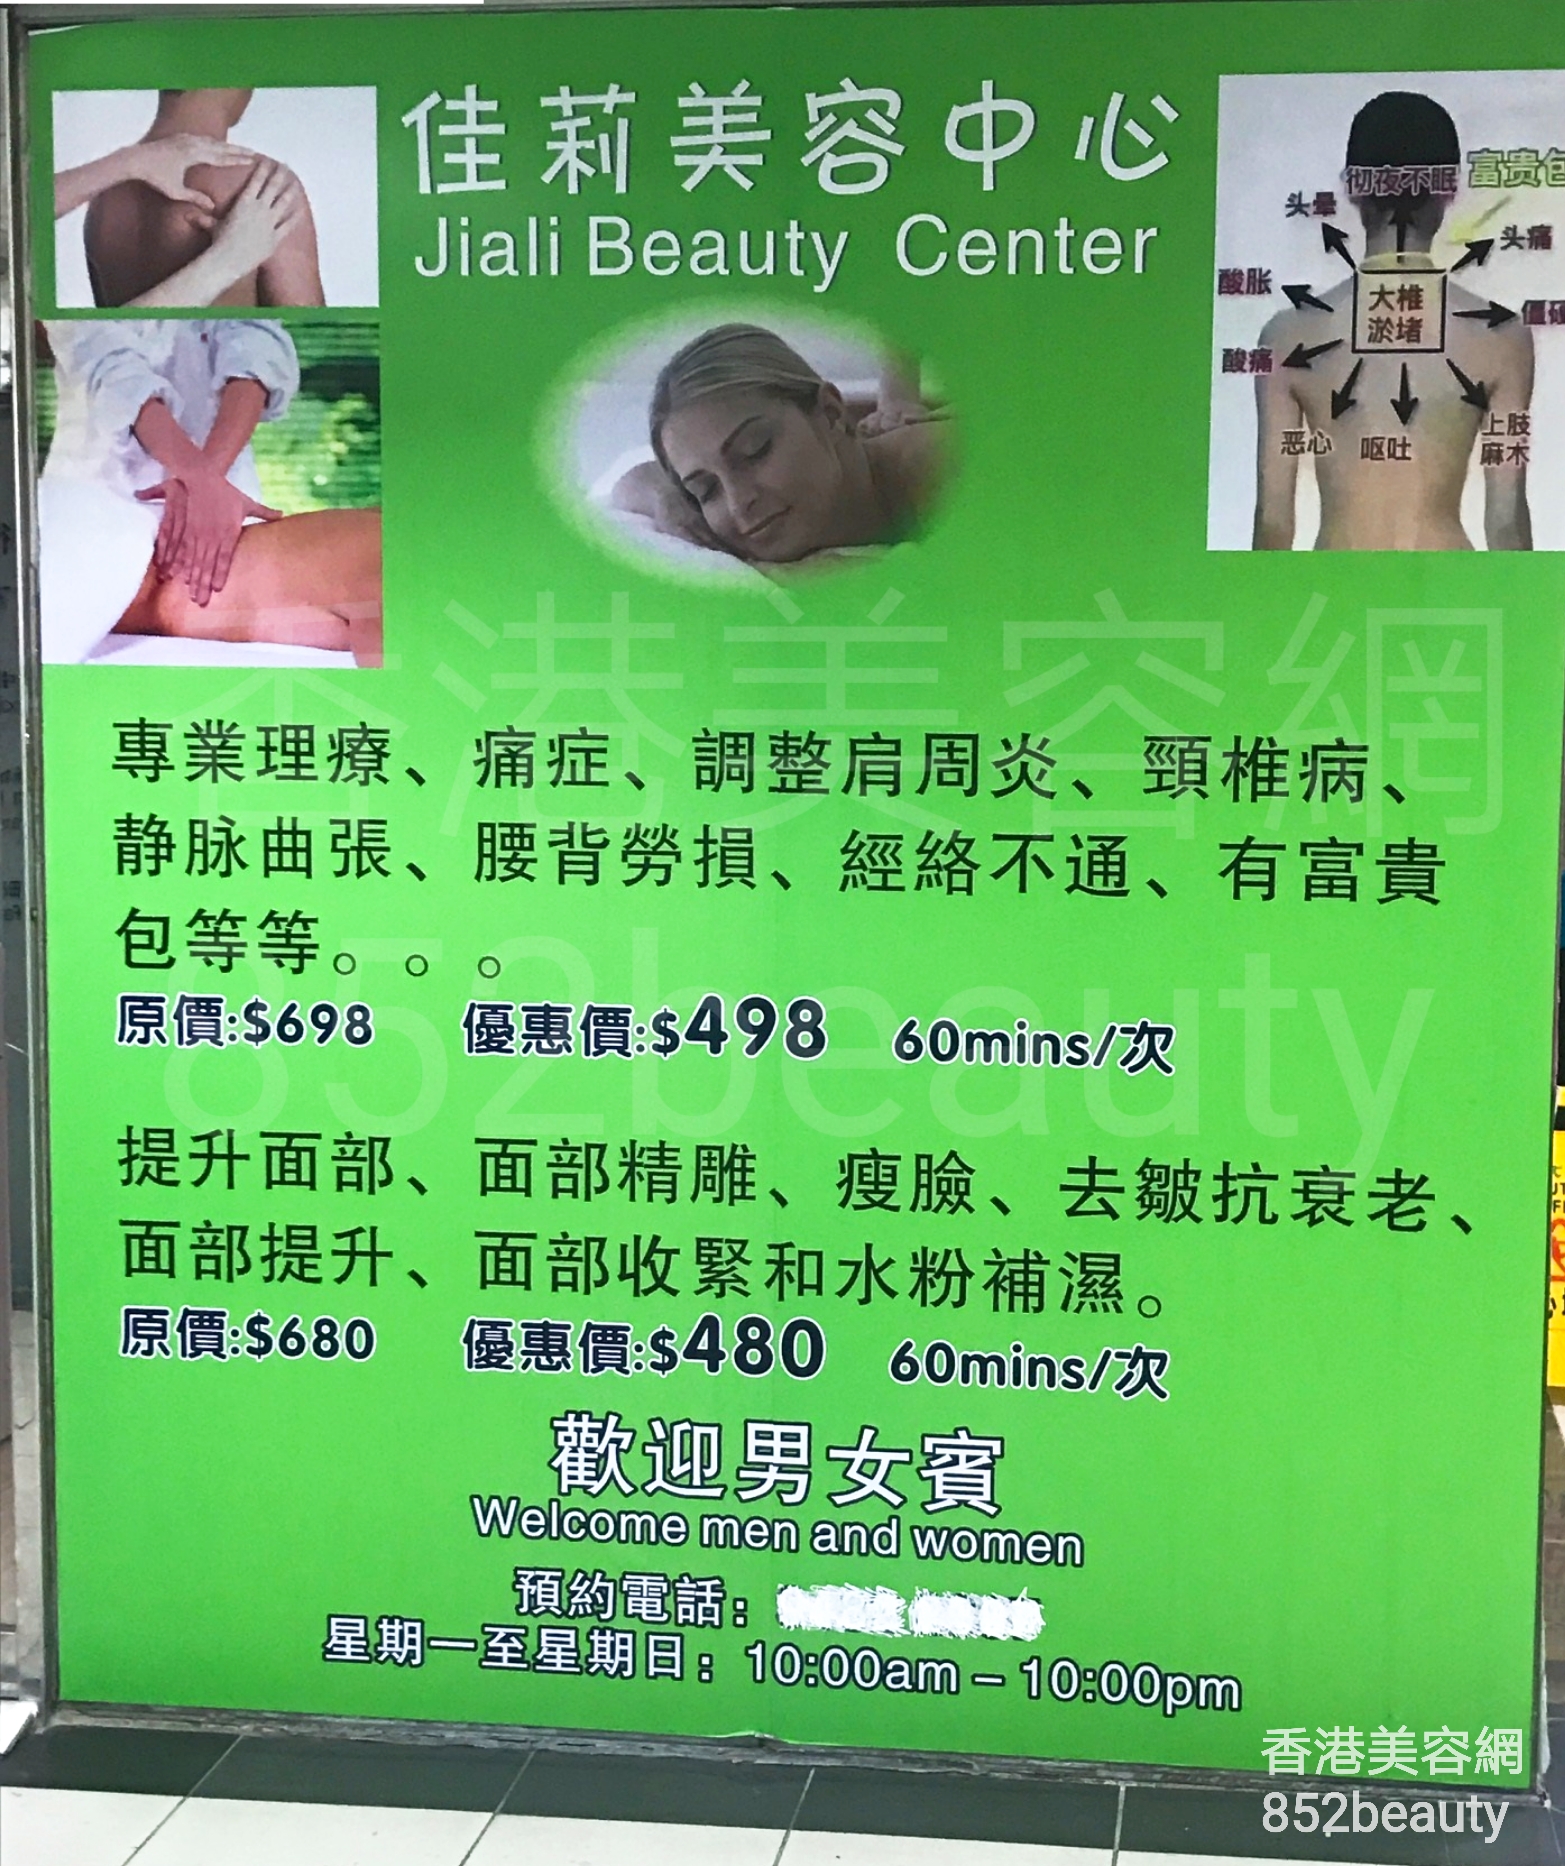 香港美容網 Hong Kong Beauty Salon 美容院 / 美容師: 佳莉美容中心 Jiali Beauty Center